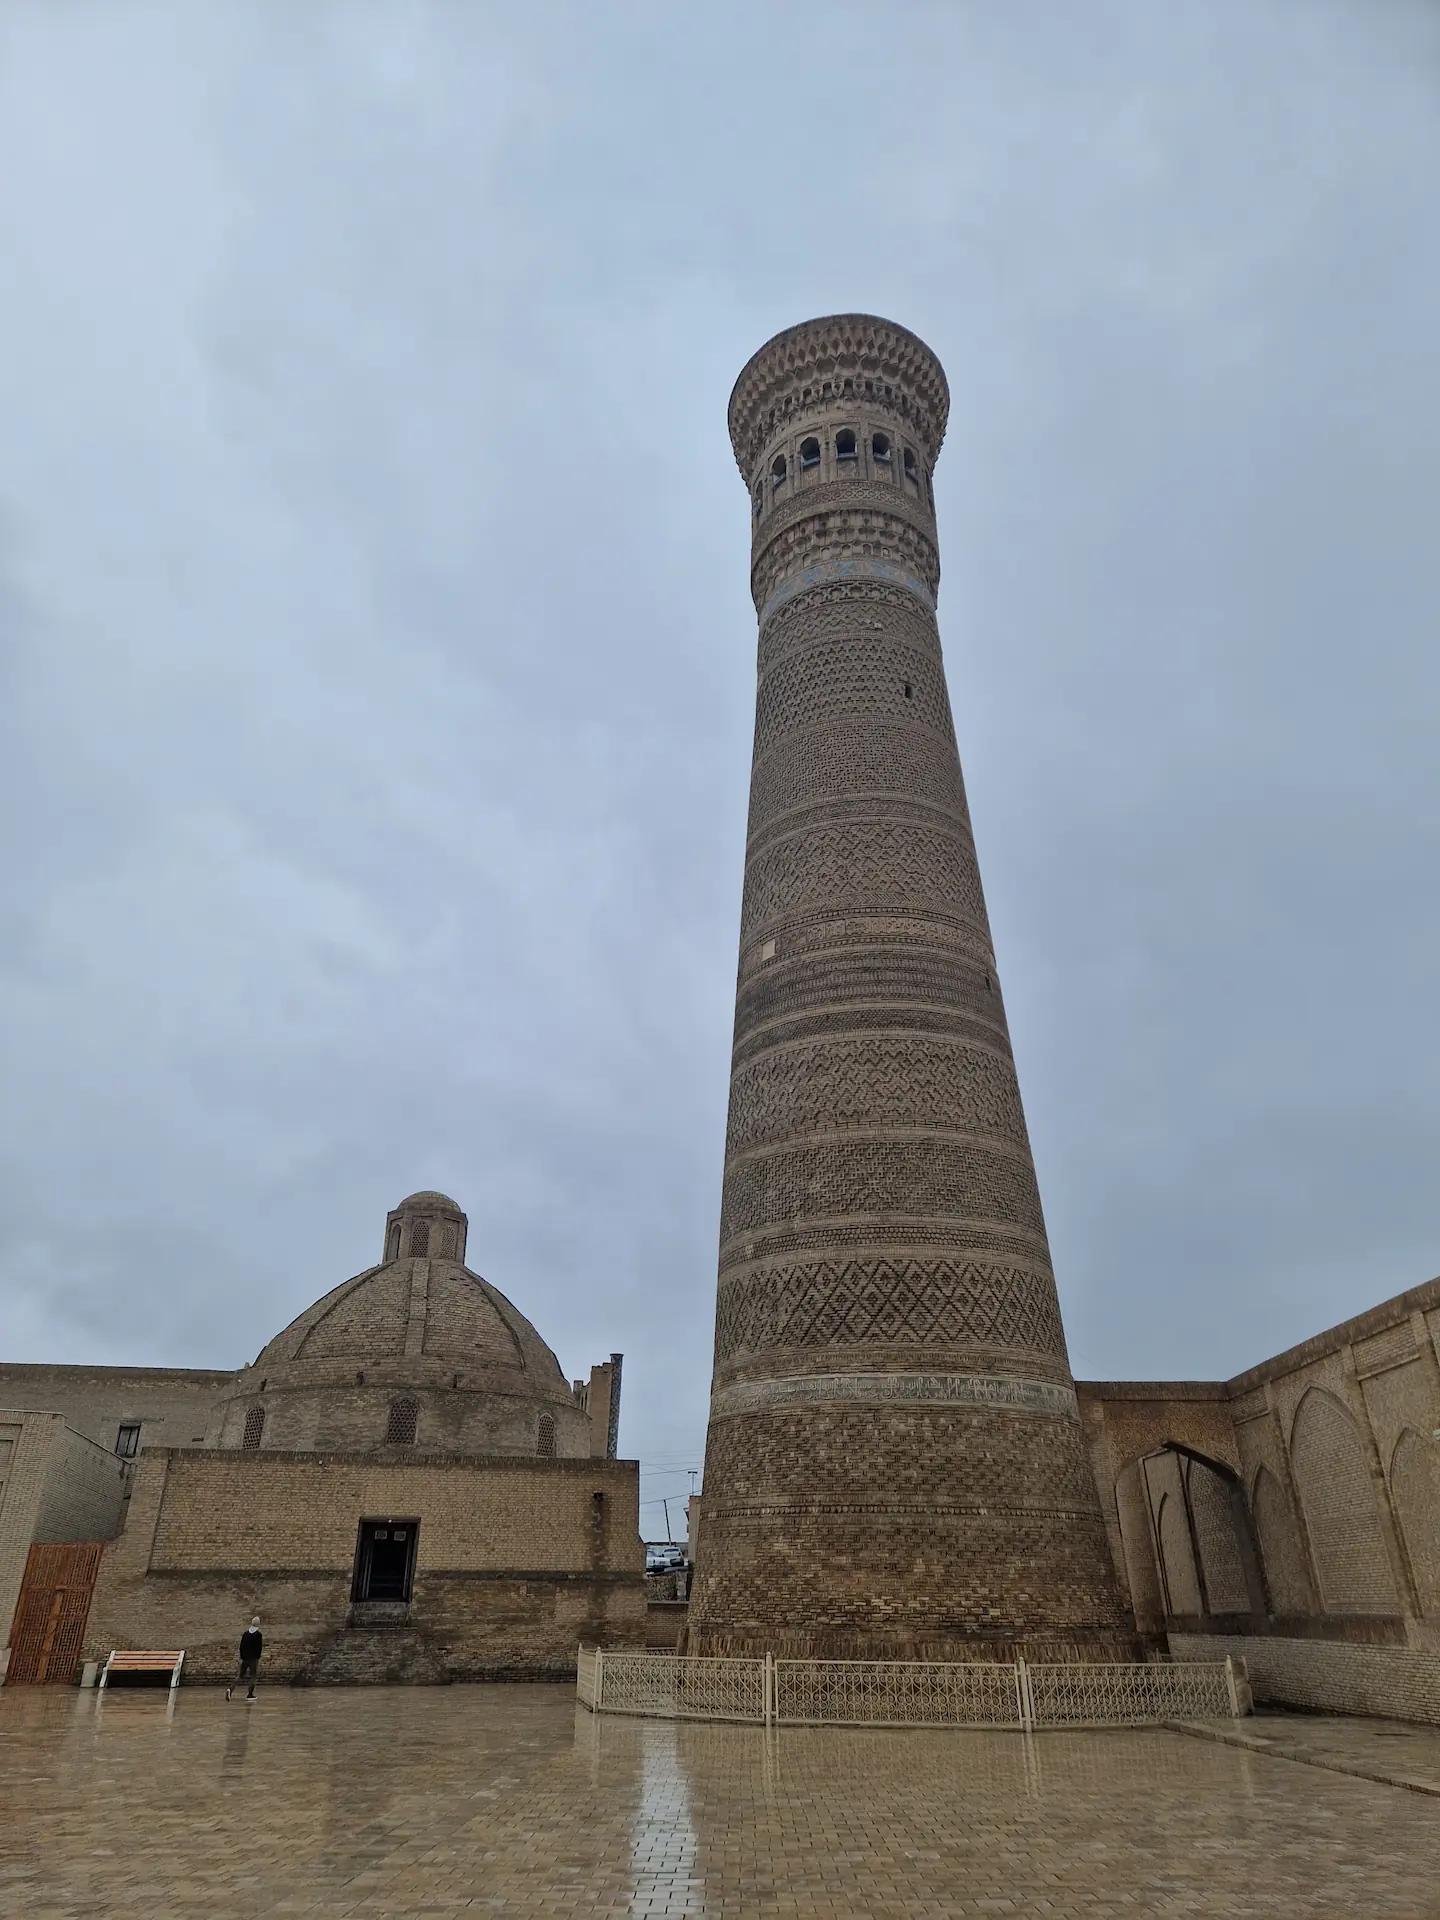 La minaret de Boukhara de briques couleur sable, large, imposant, sous un ciel gris.